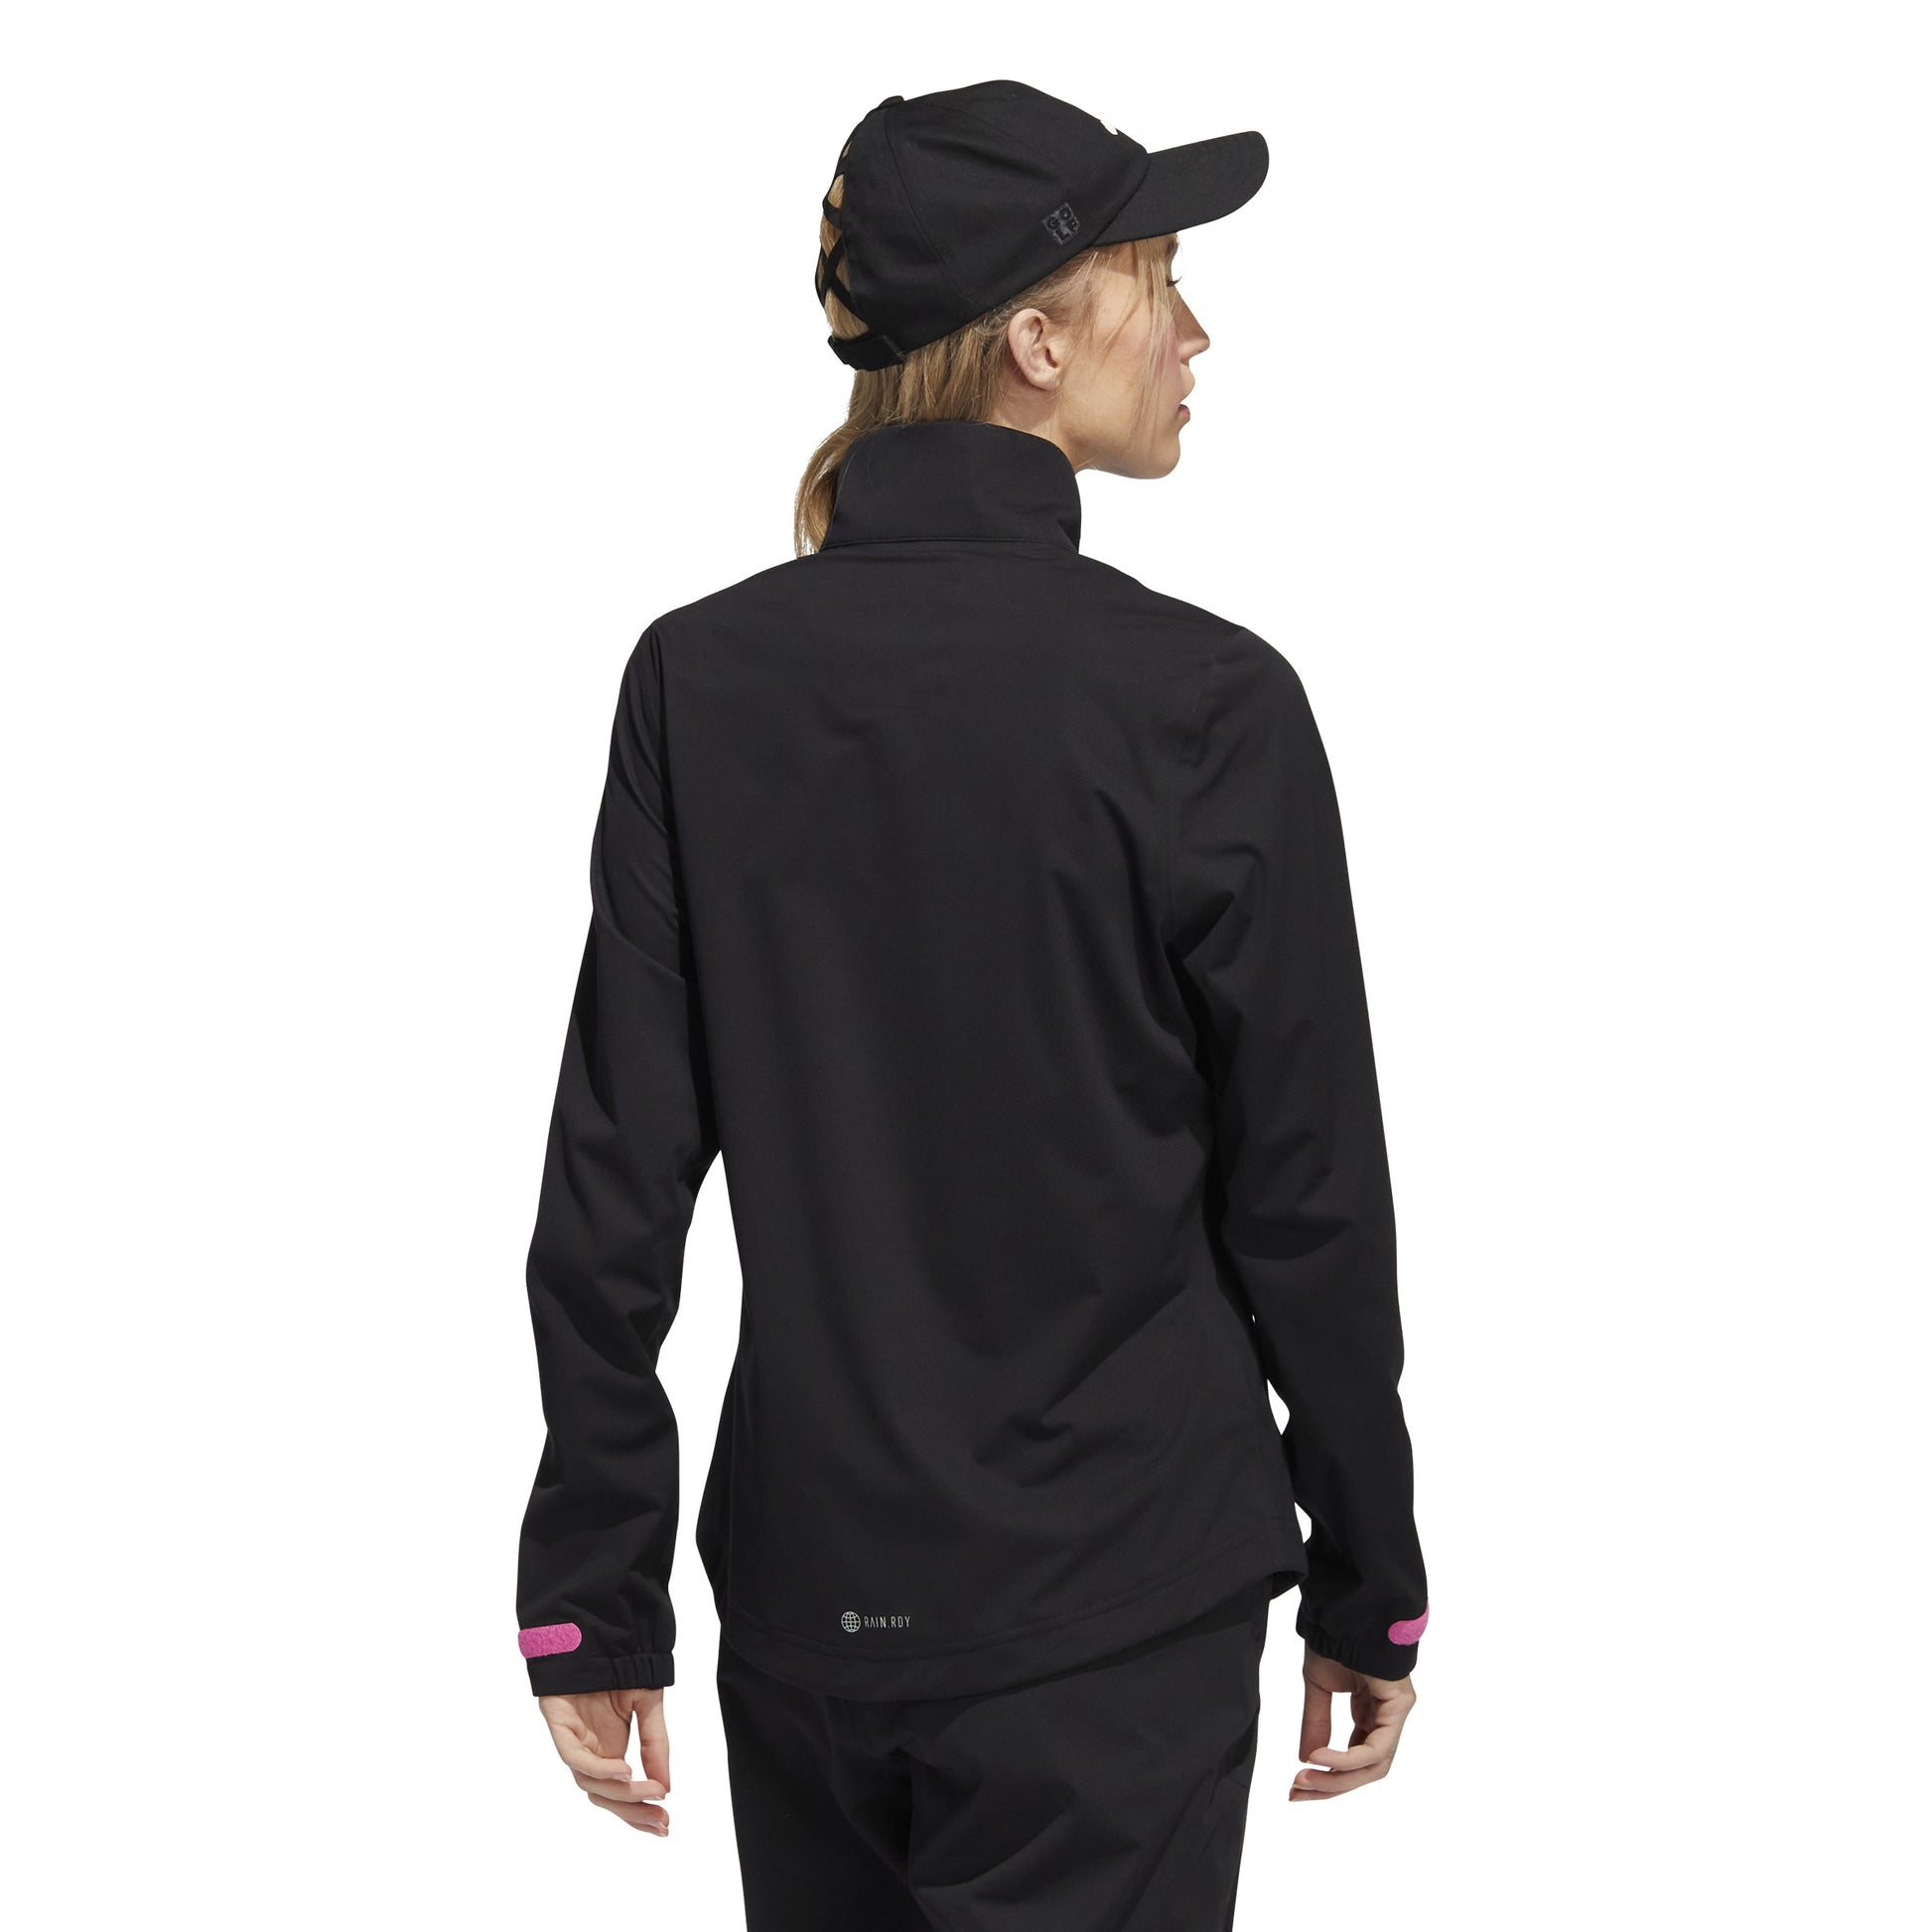 adidas Ladies Waterproof Golf Jacket in Black